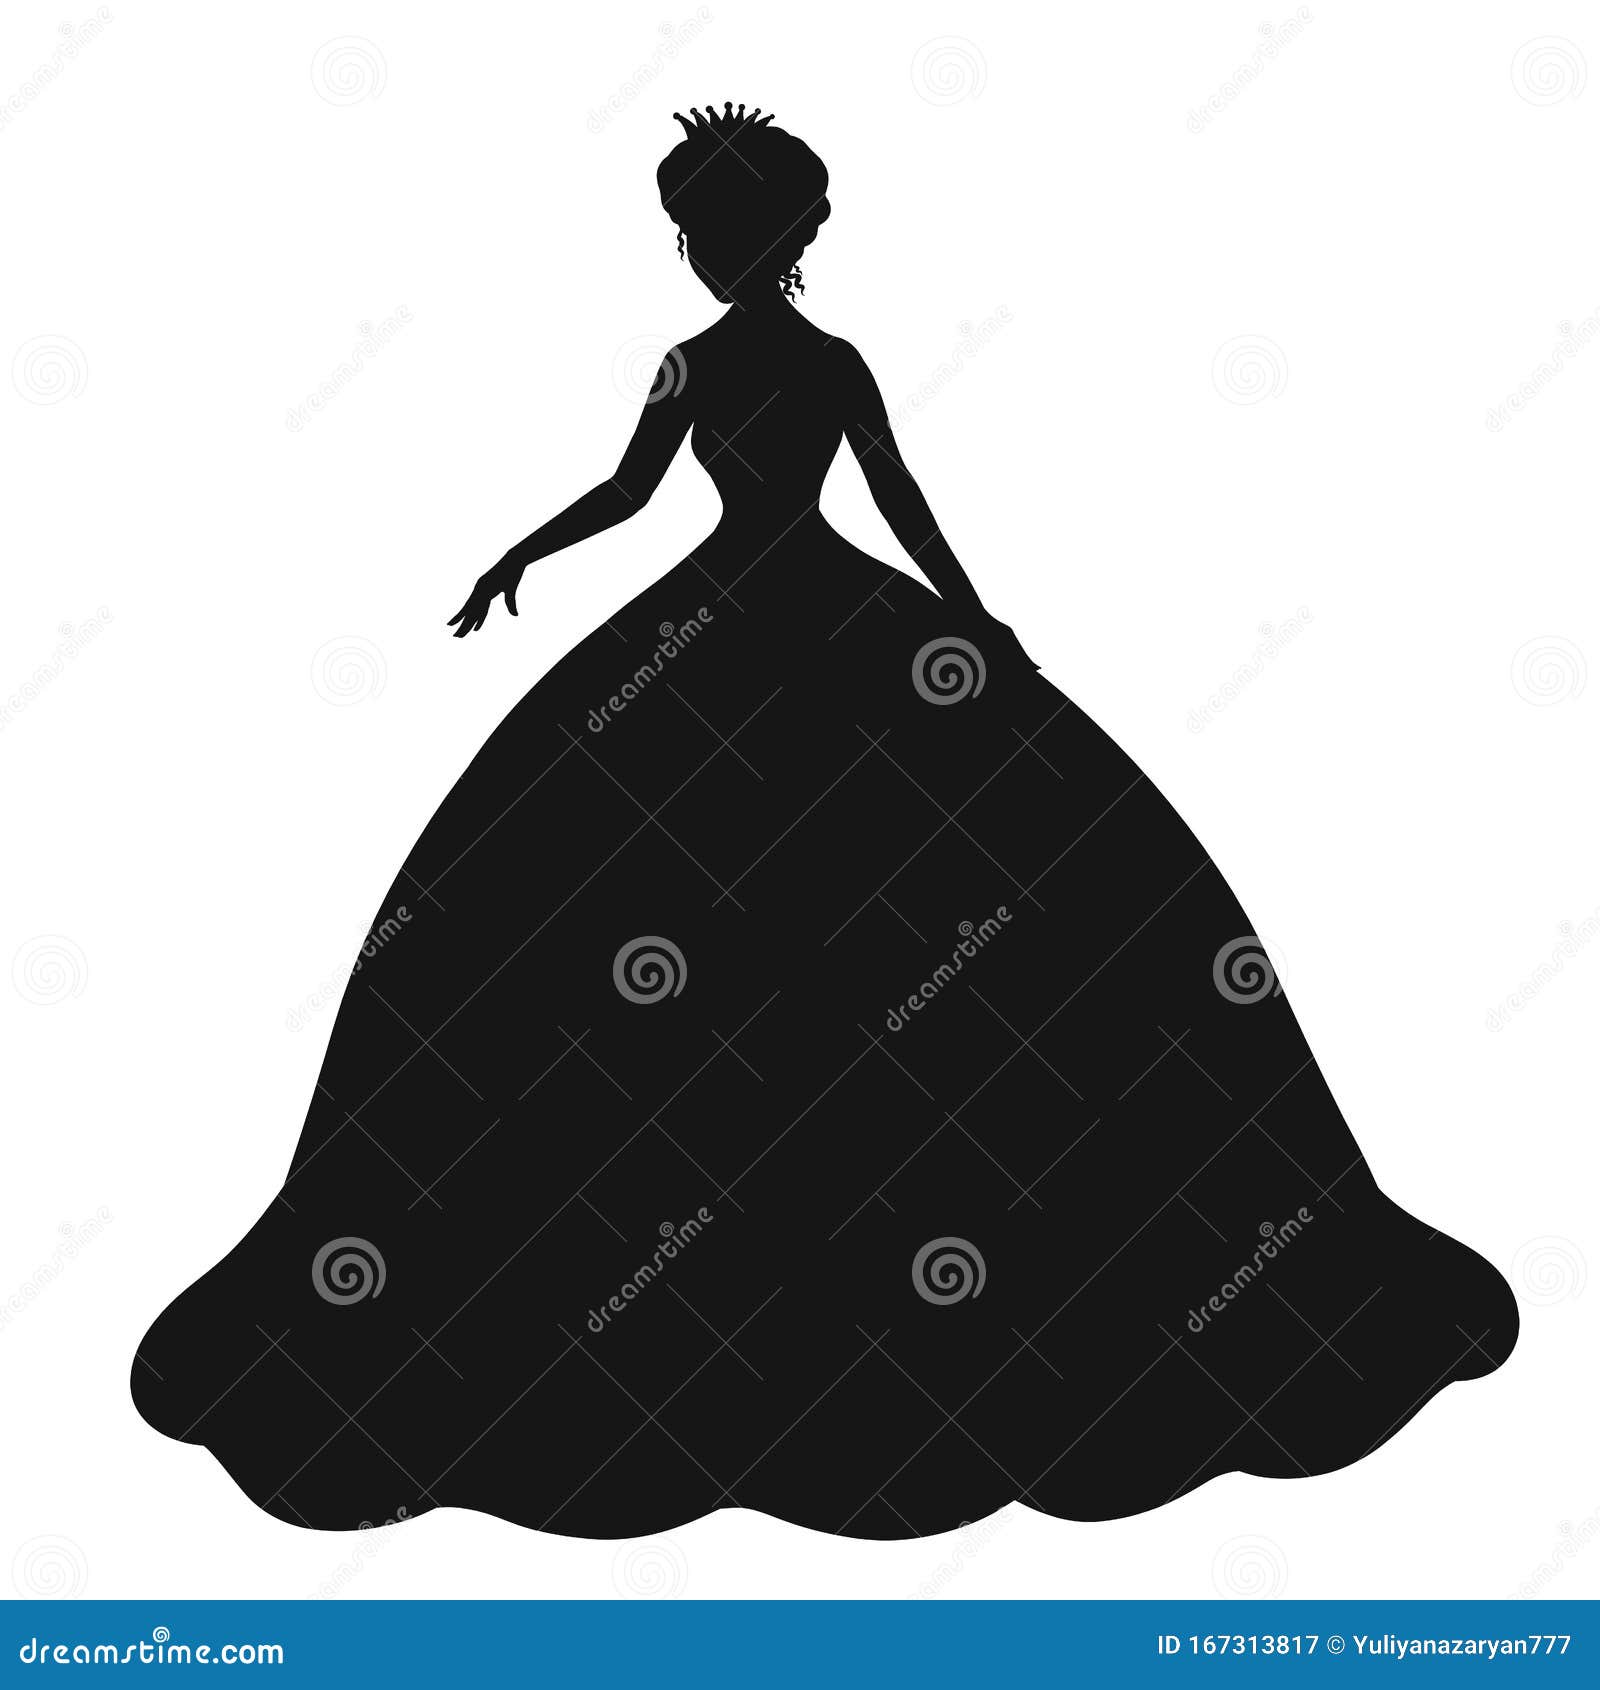 princess silhouette dress